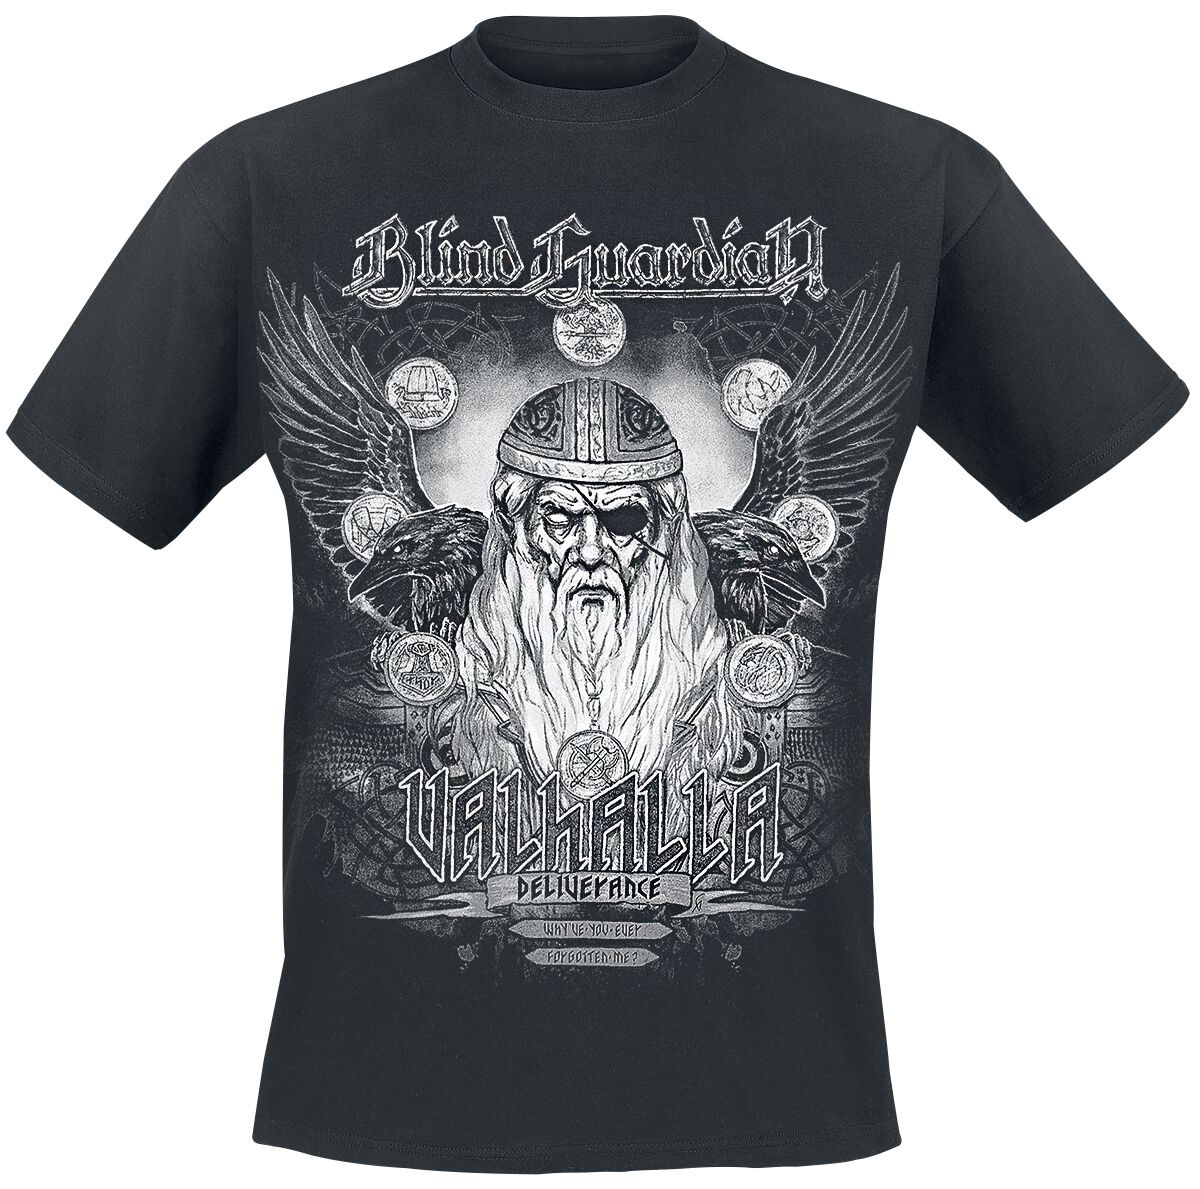 Image of Blind Guardian Valhalla - Deliverance T-Shirt schwarz